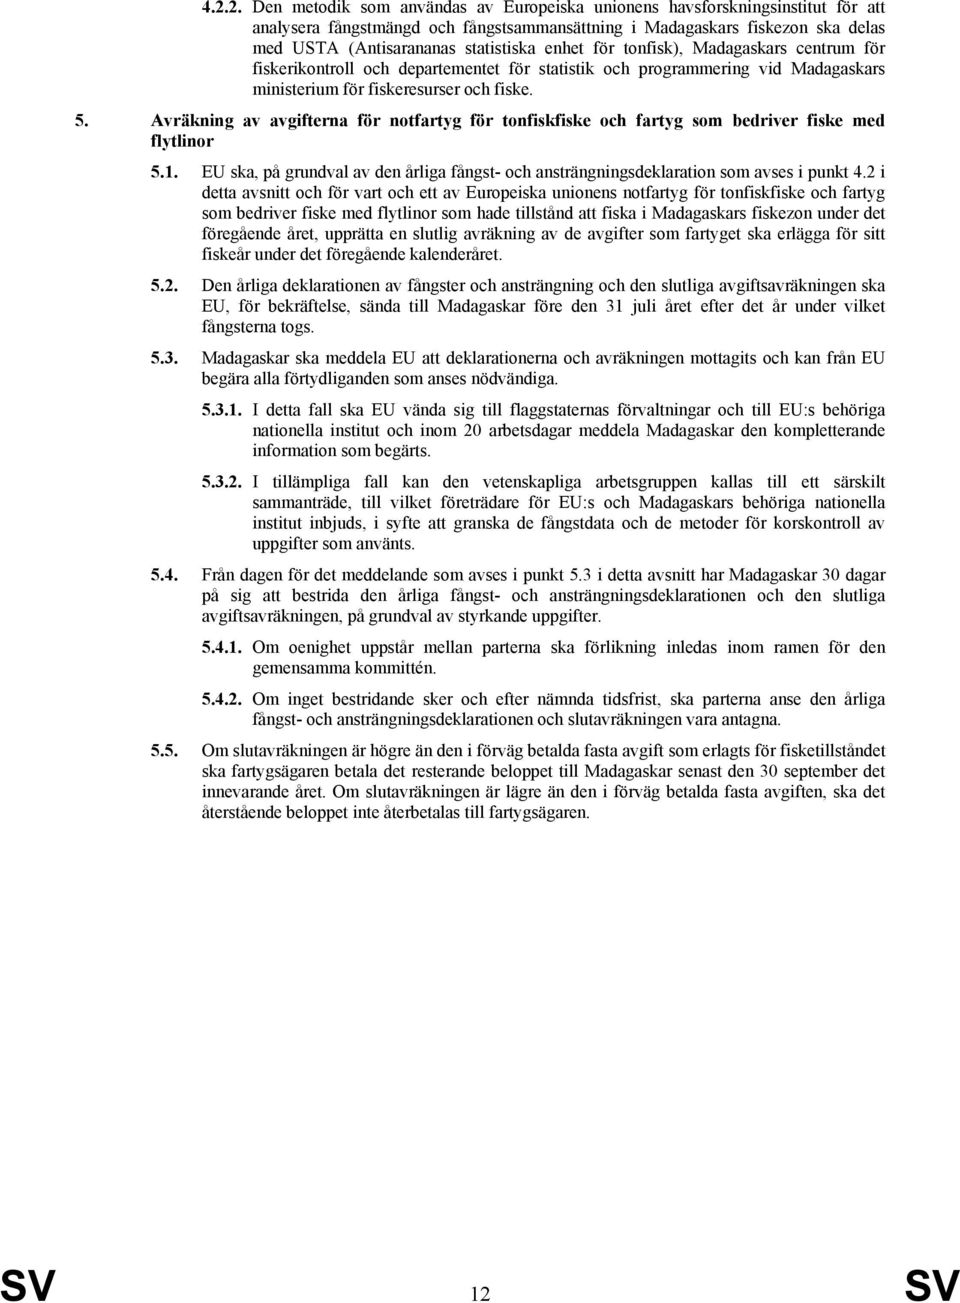 Avräkning av avgifterna för notfartyg för tonfiskfiske och fartyg som bedriver fiske med flytlinor 5.1. EU ska, på grundval av den årliga fångst- och ansträngningsdeklaration som avses i punkt 4.